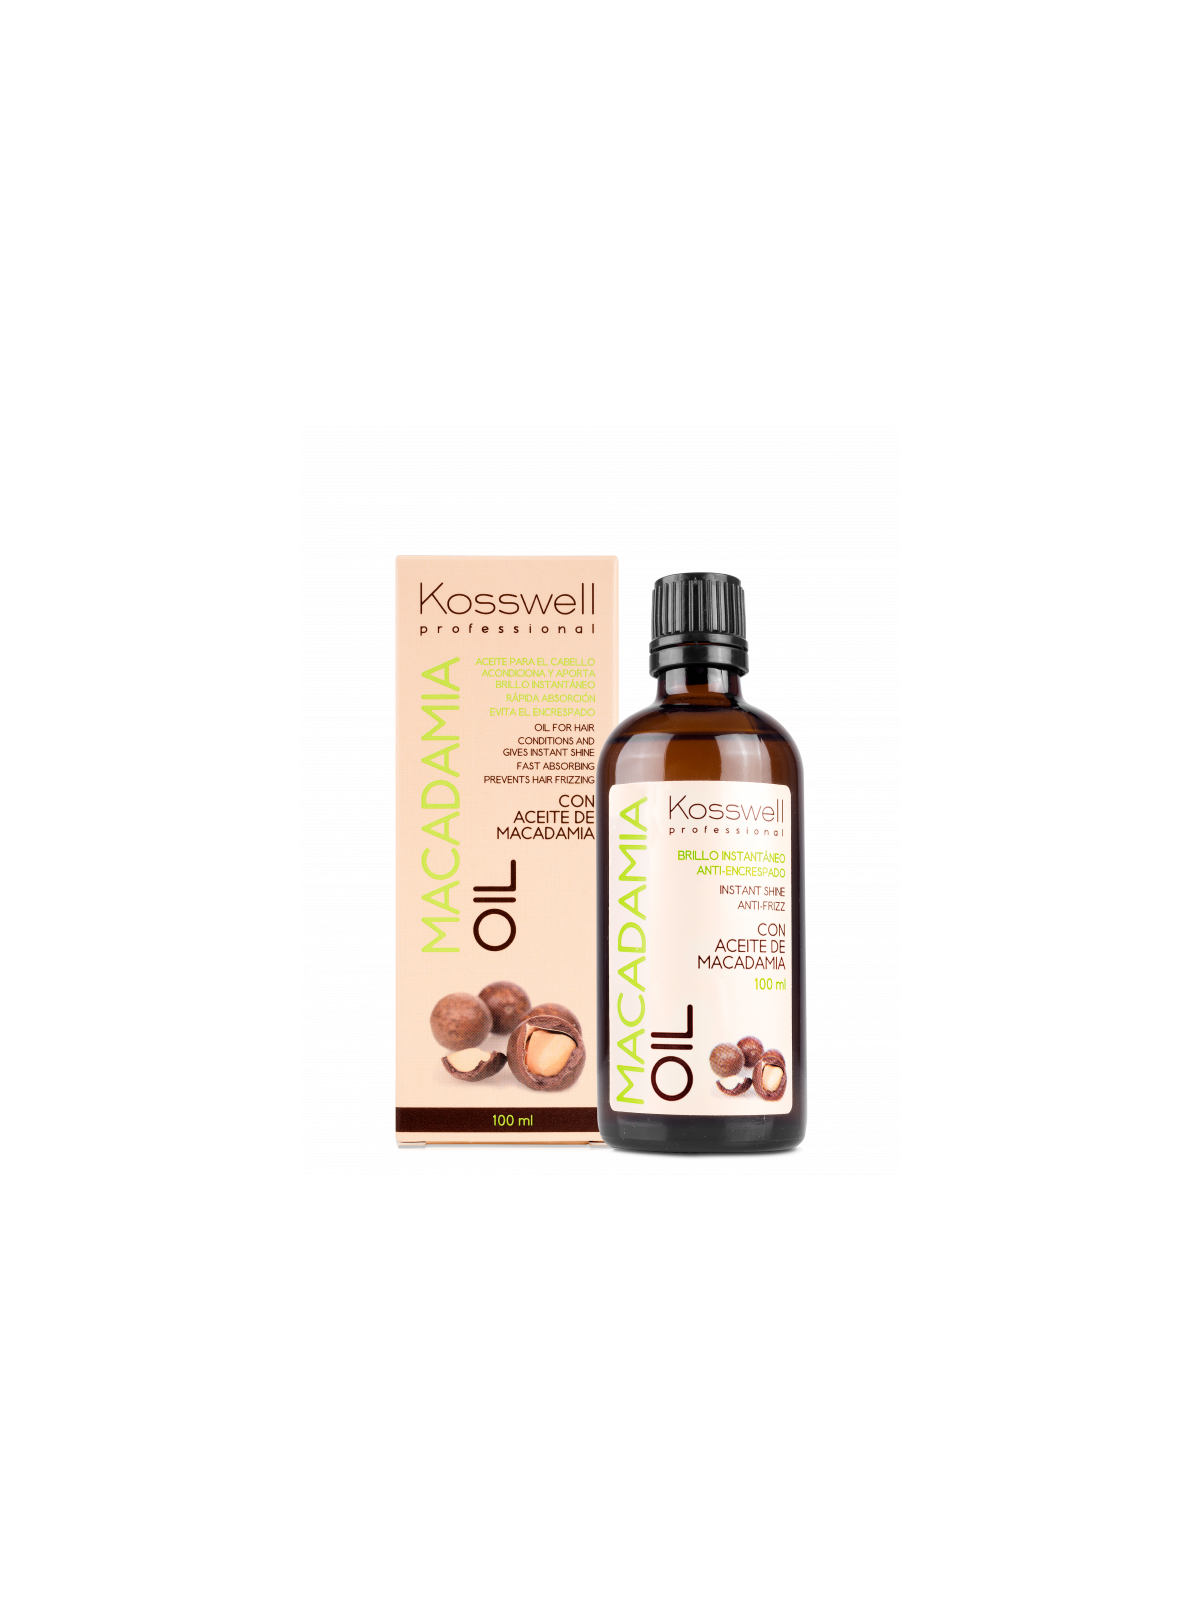 Comprar Kosswell aceite para el cabello reparador con aceite de macadamia 100ml en Inicio por sólo 16,46 € o un precio específico de 16,46 € en Thalie Care